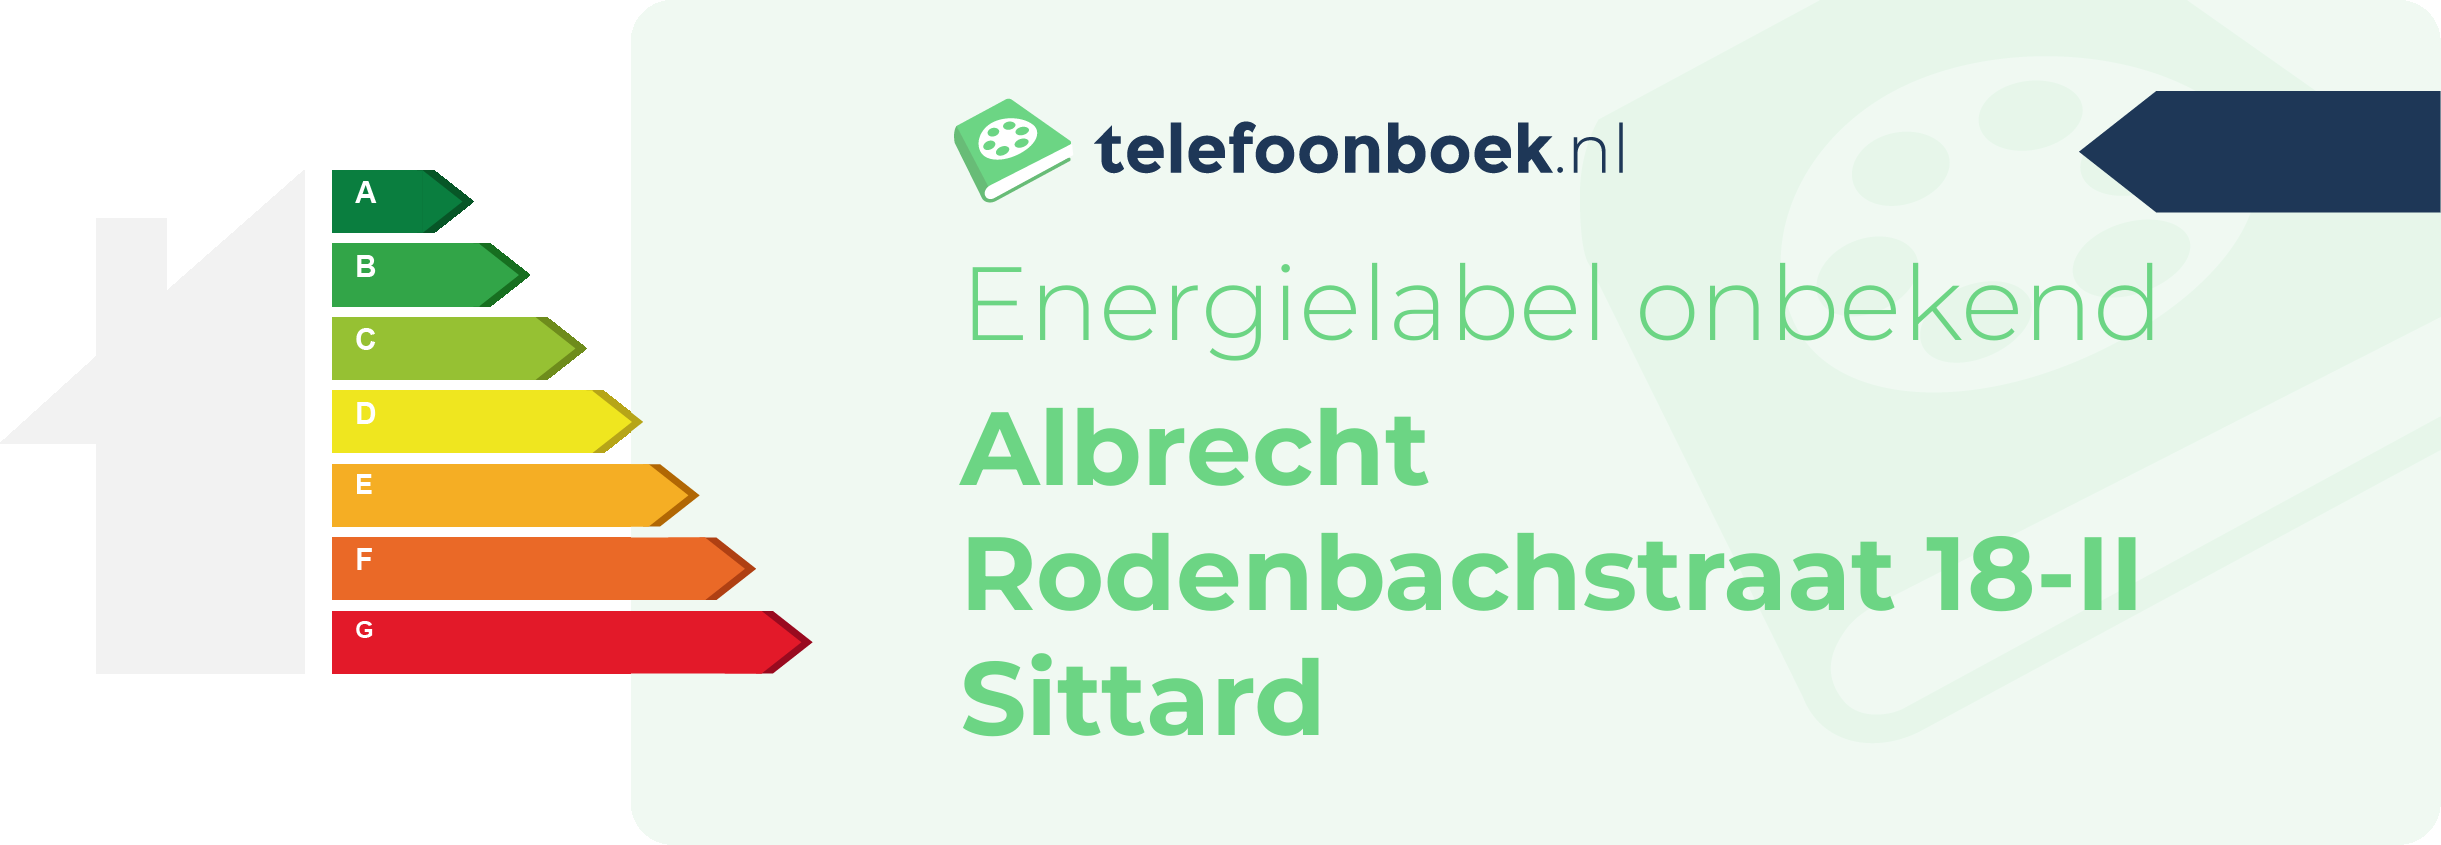 Energielabel Albrecht Rodenbachstraat 18-II Sittard